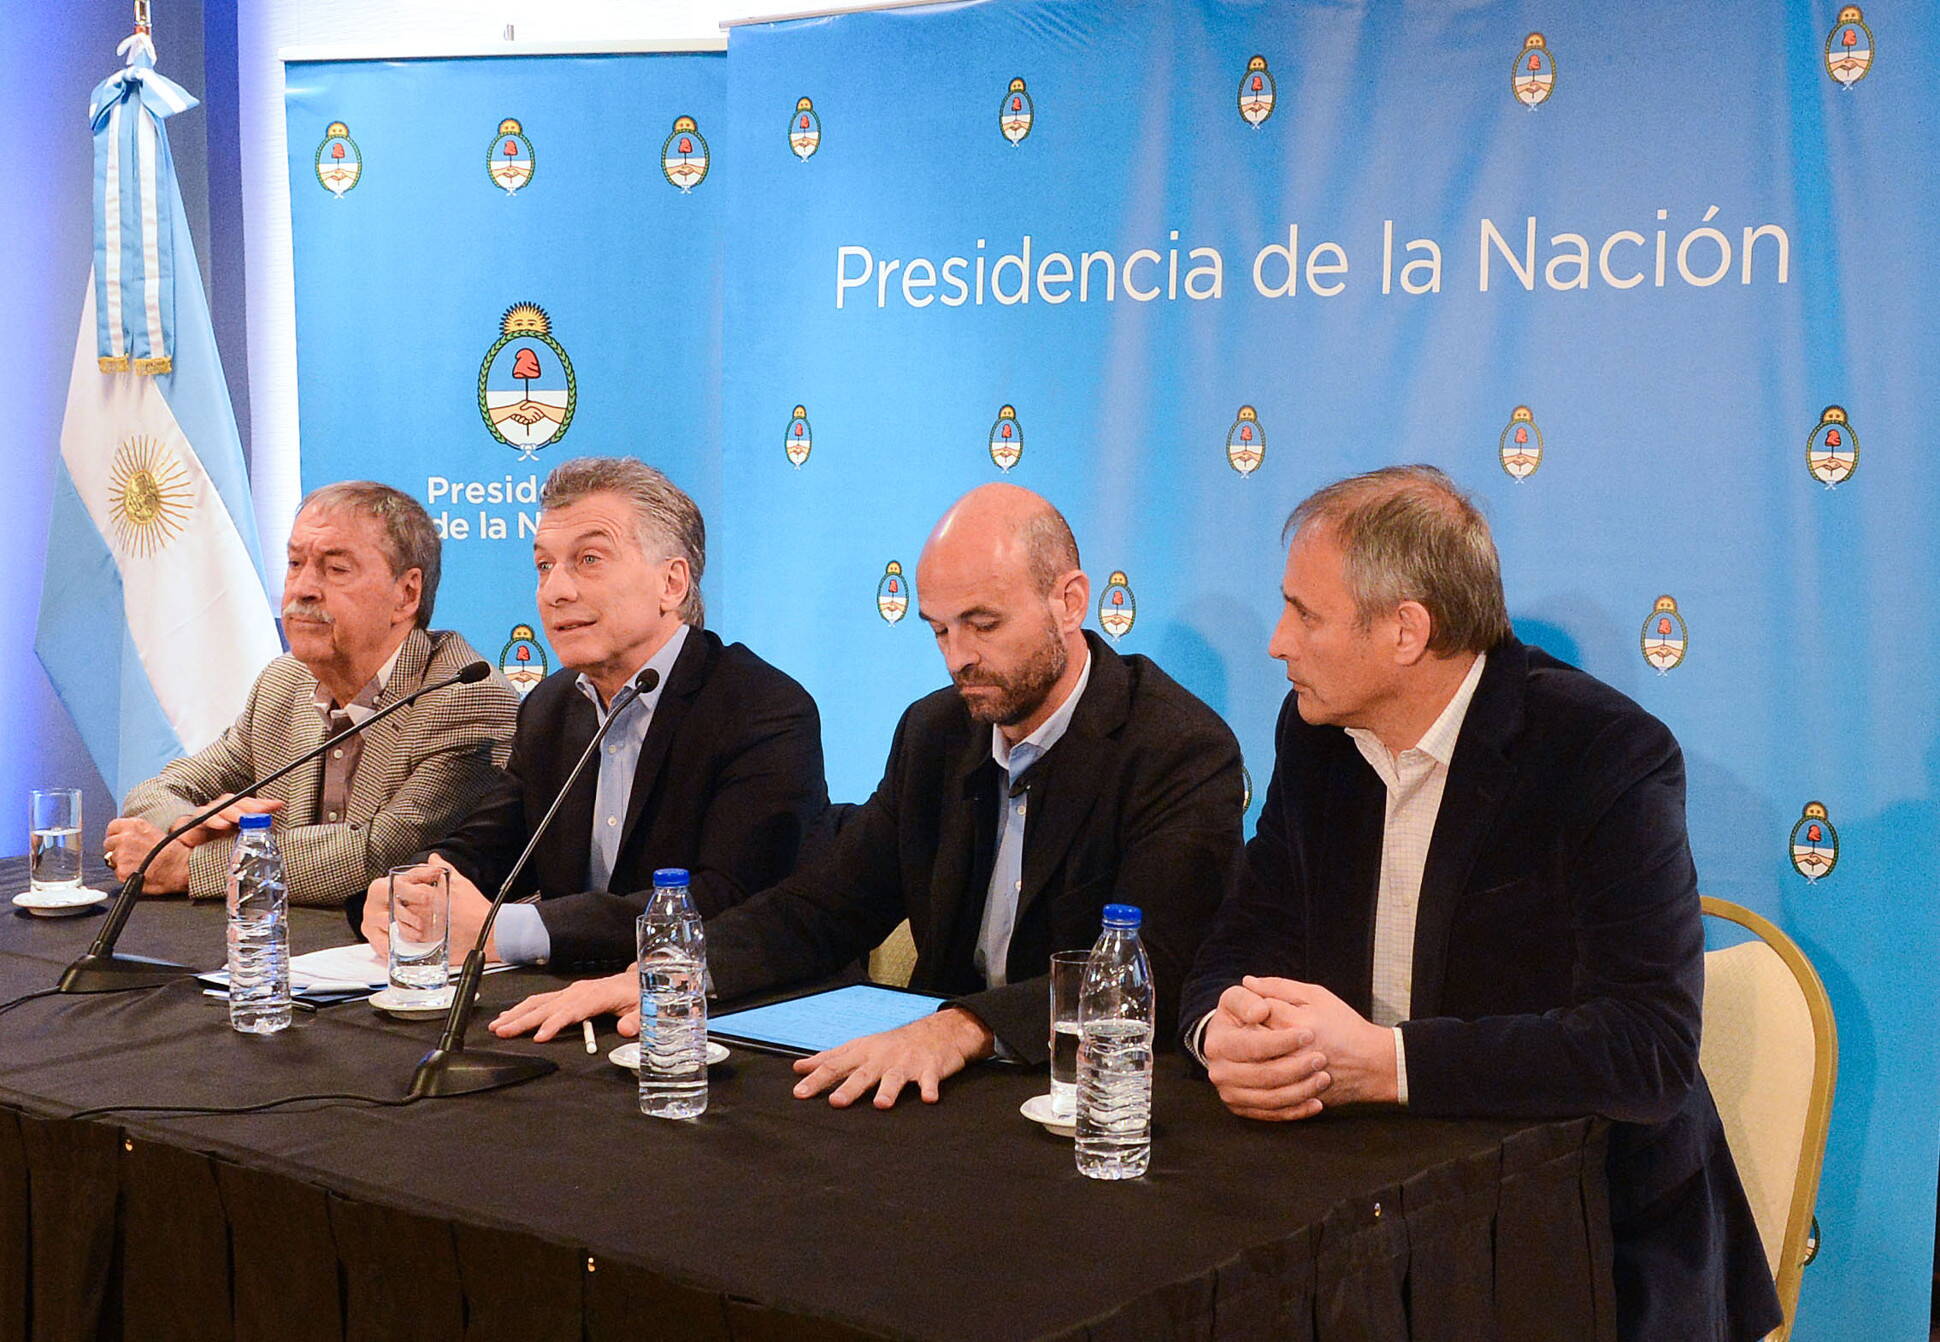 Macri: Hoy las obras empiezan y terminan en las fechas comprometidas y no significan corrupción